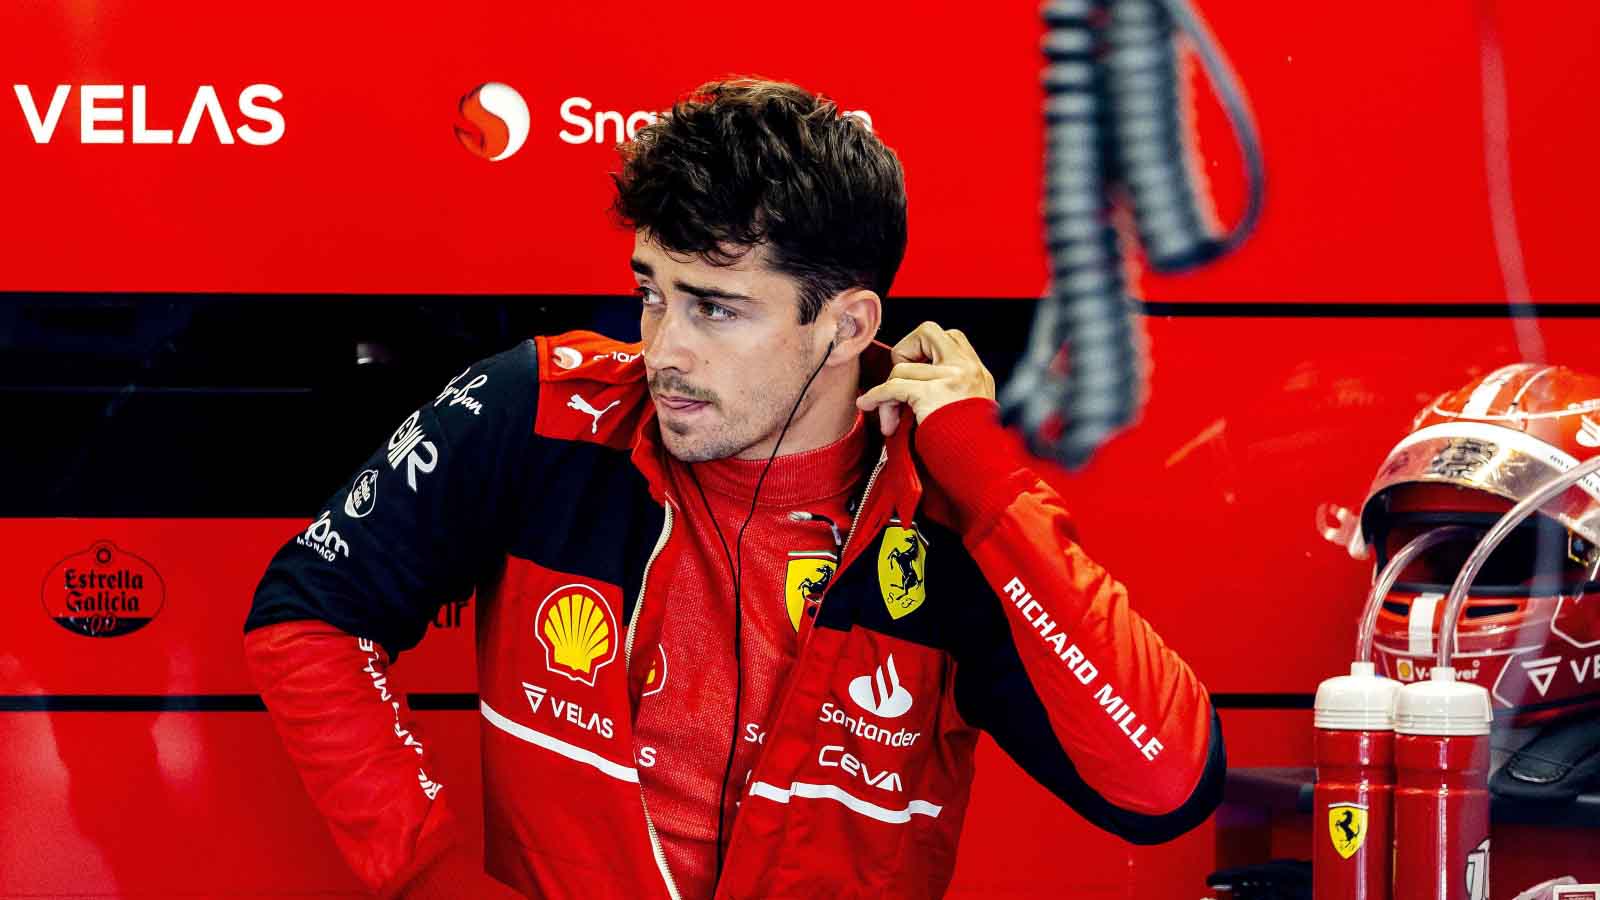 “Stiamo facendo qualcosa di sbagliato” – Leclerc è perplesso dalle difficoltà sue e della Ferrari nel Gran Premio di Spagna.